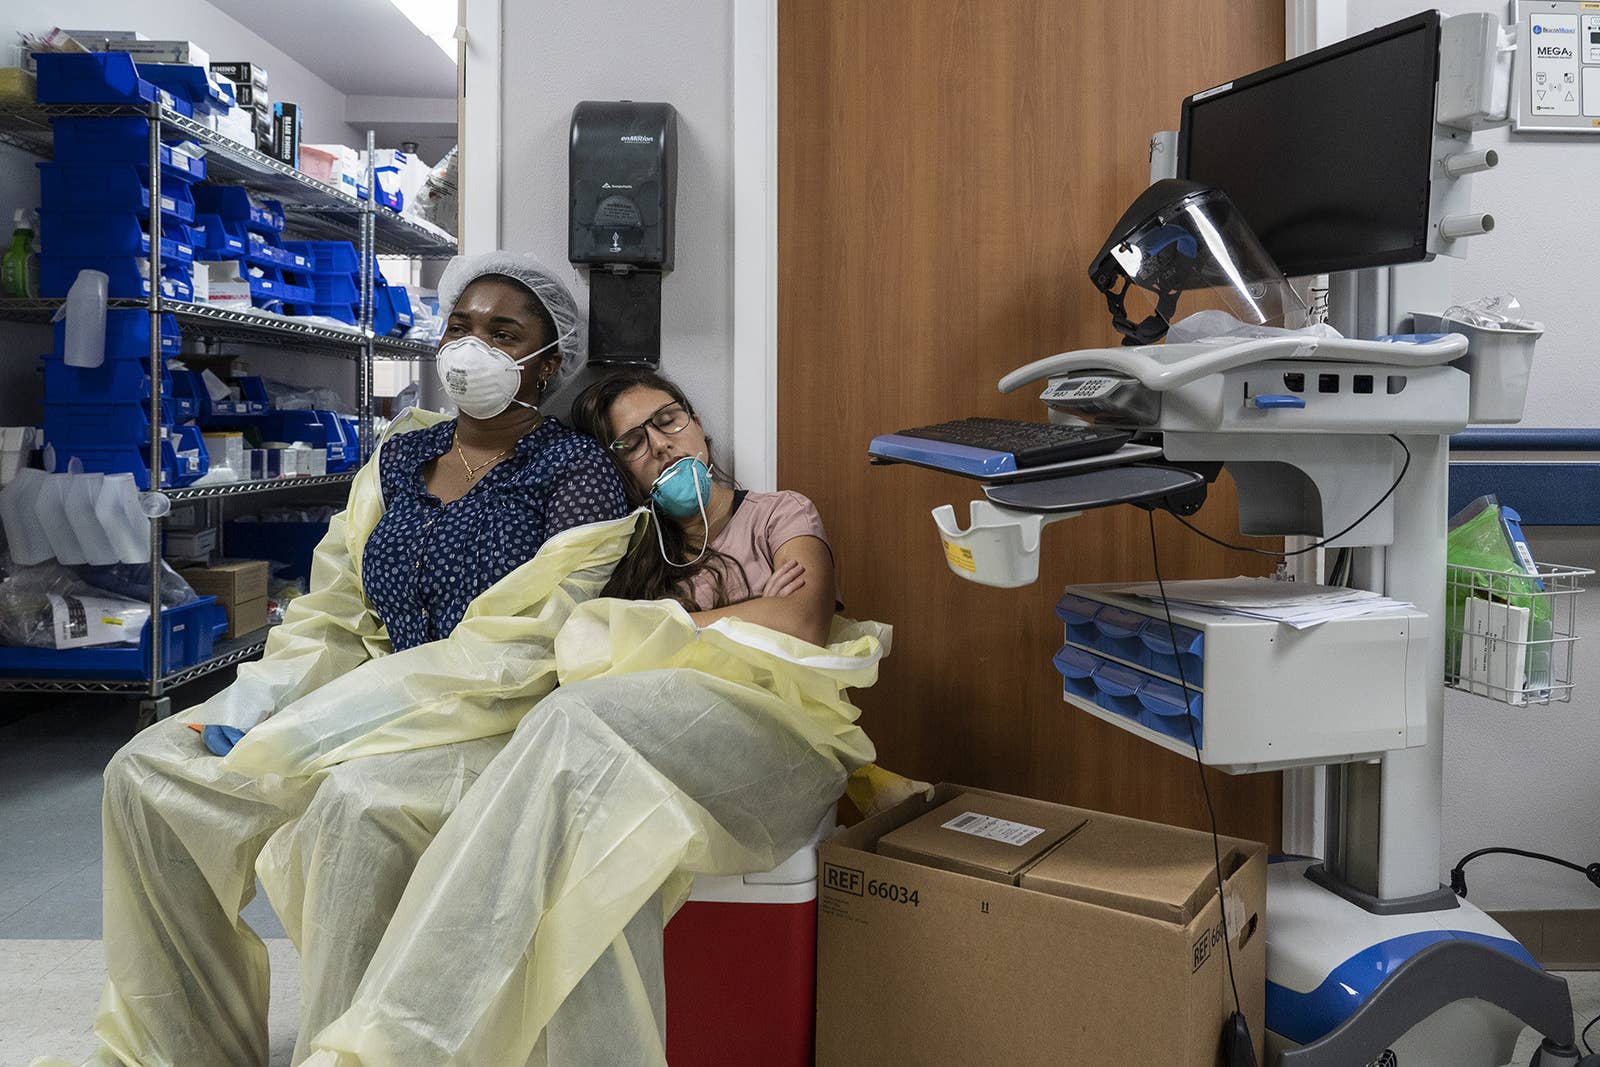 До слёз: фотограф из Техаса показал снимки, сделанные в госпитале, где лежат с COVID-19 - фото 4